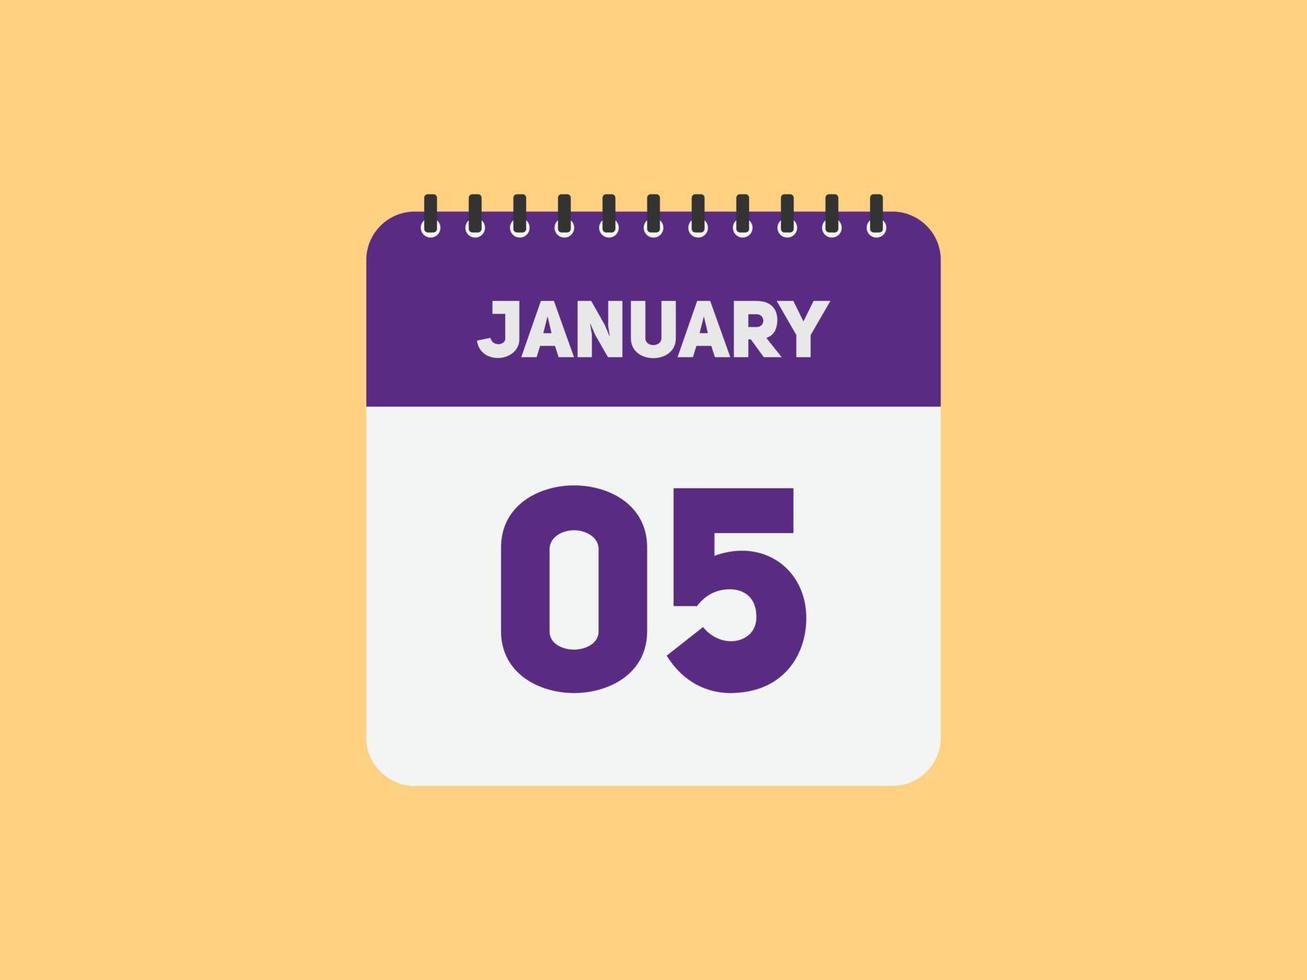 lembrete de calendário de 5 de janeiro. 5 de janeiro modelo de ícone de calendário diário. modelo de design de ícone de 5 de janeiro de calendário. ilustração vetorial vetor